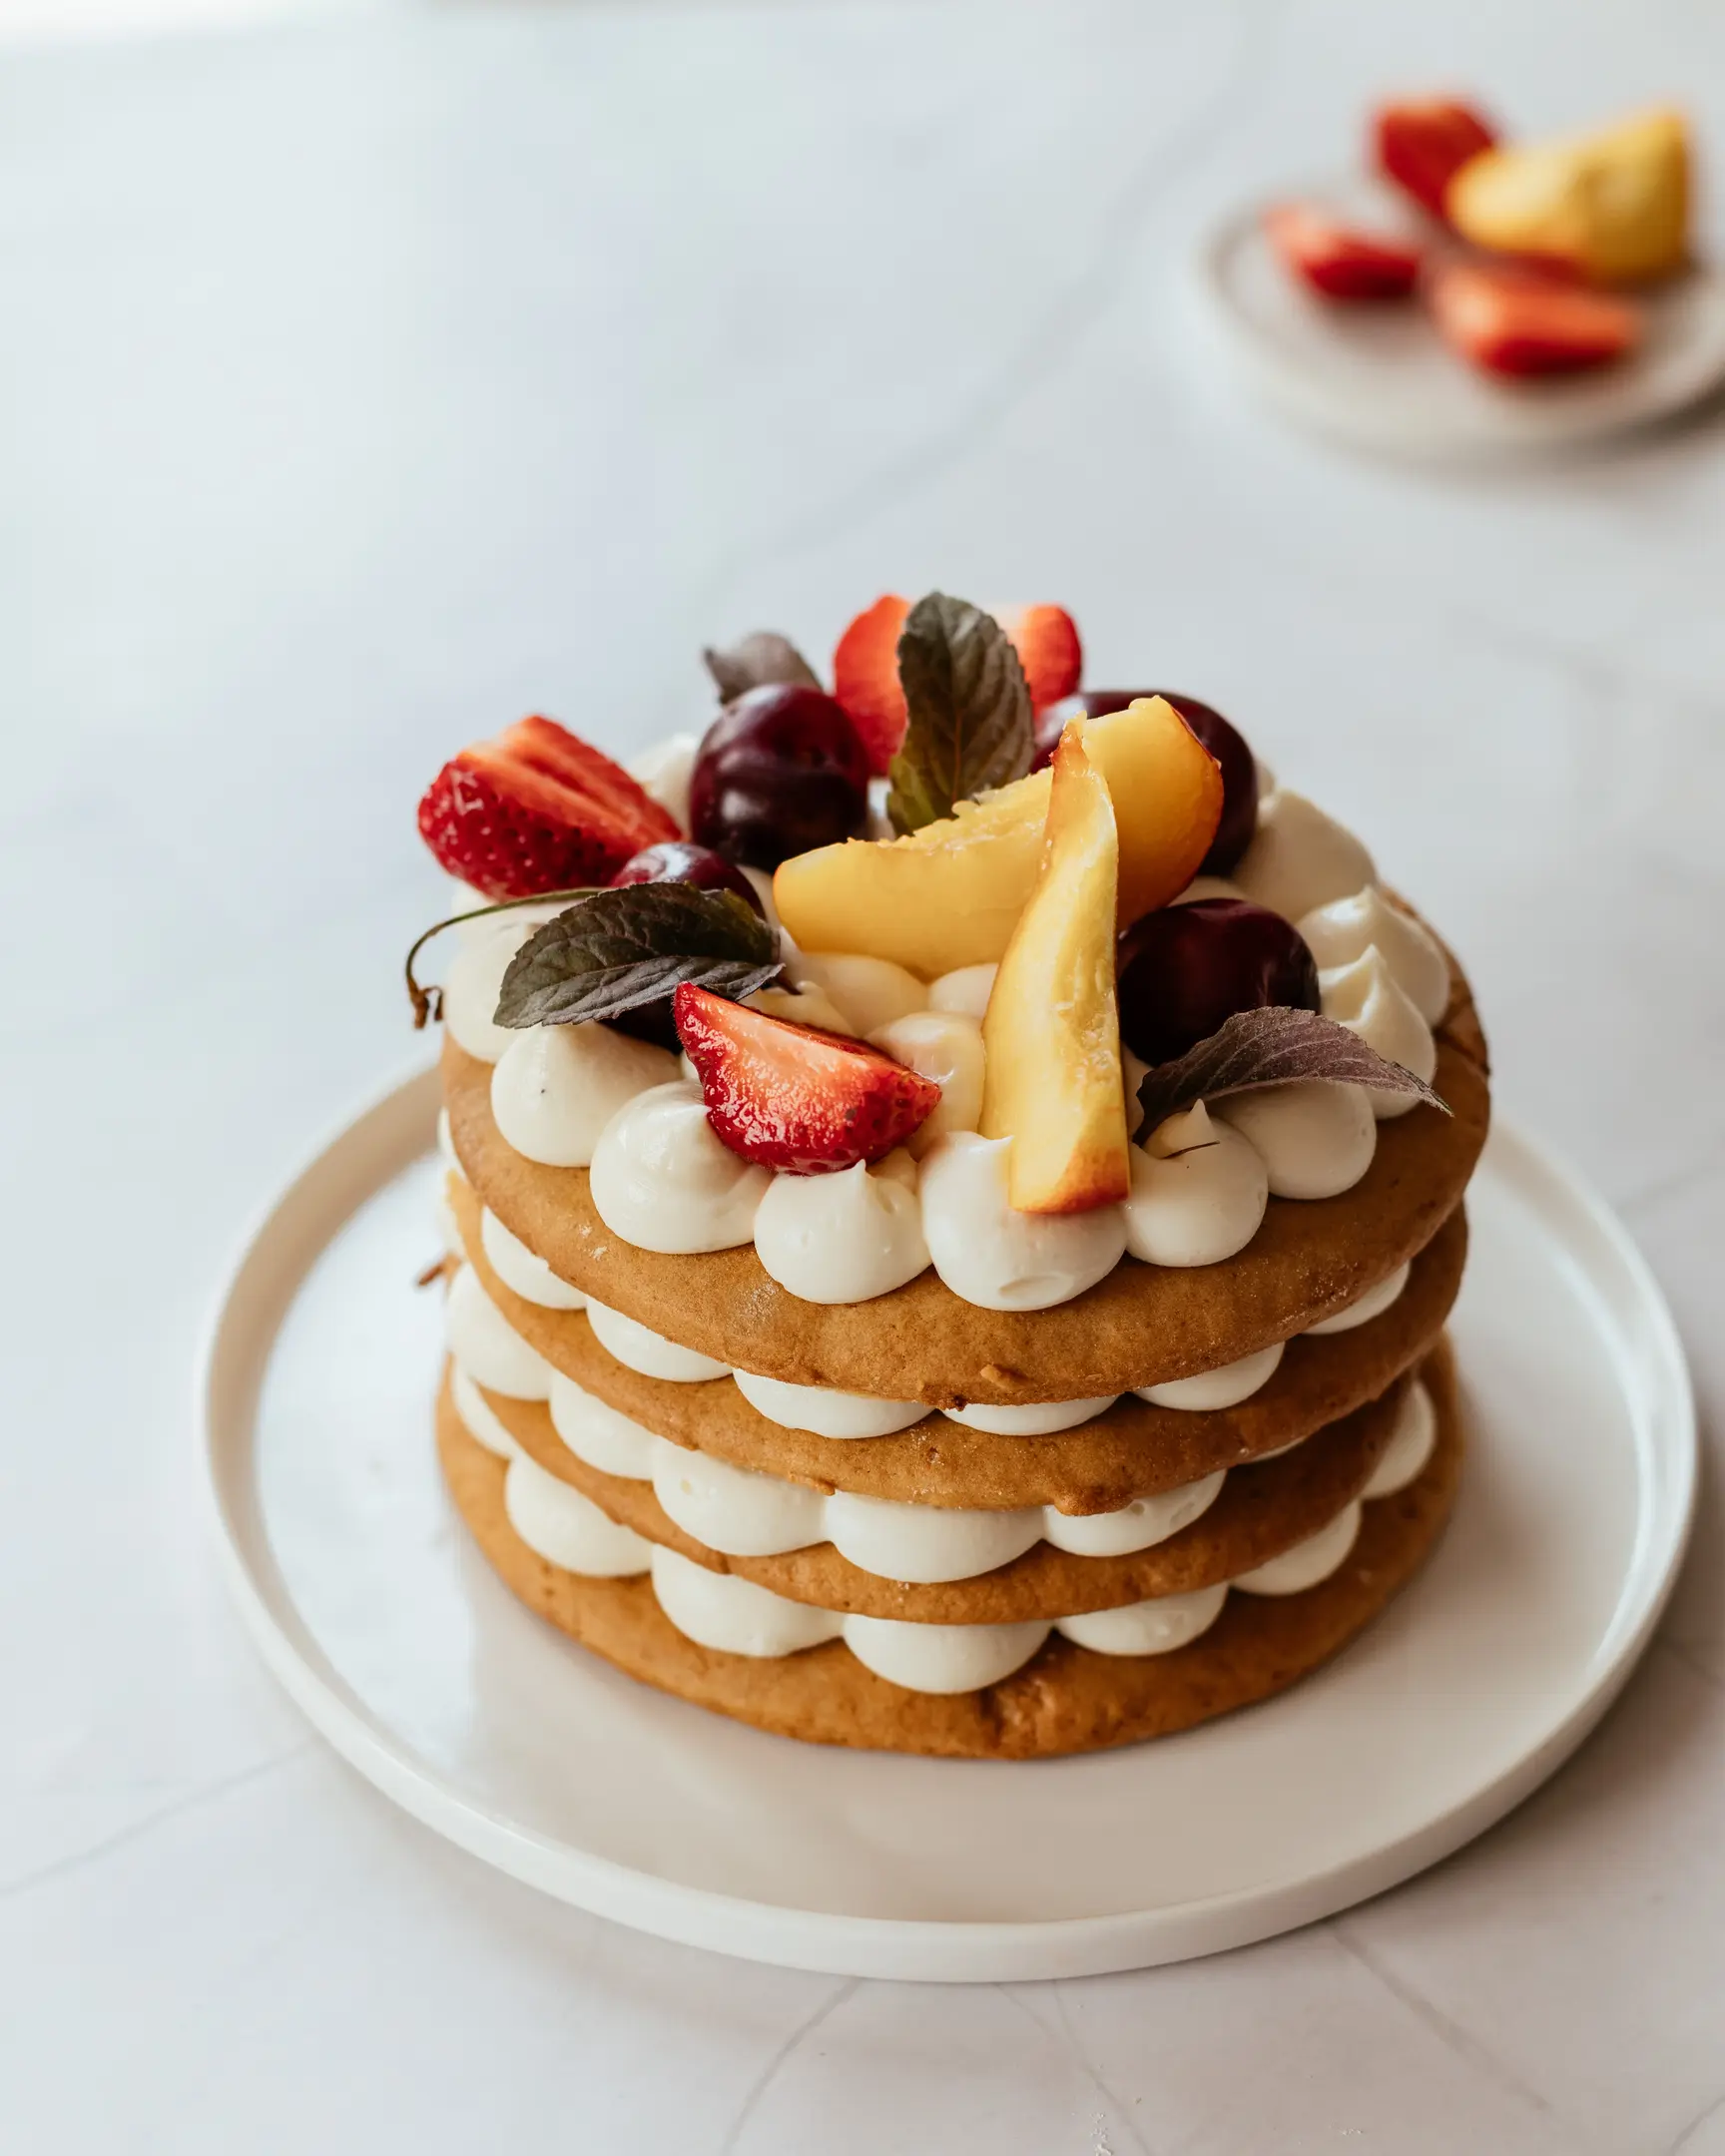 Слоеста медена торта, украсена с горски плодове, стои на маса. Слоеста медена торта, украсена с горски плодове, стои на маса.